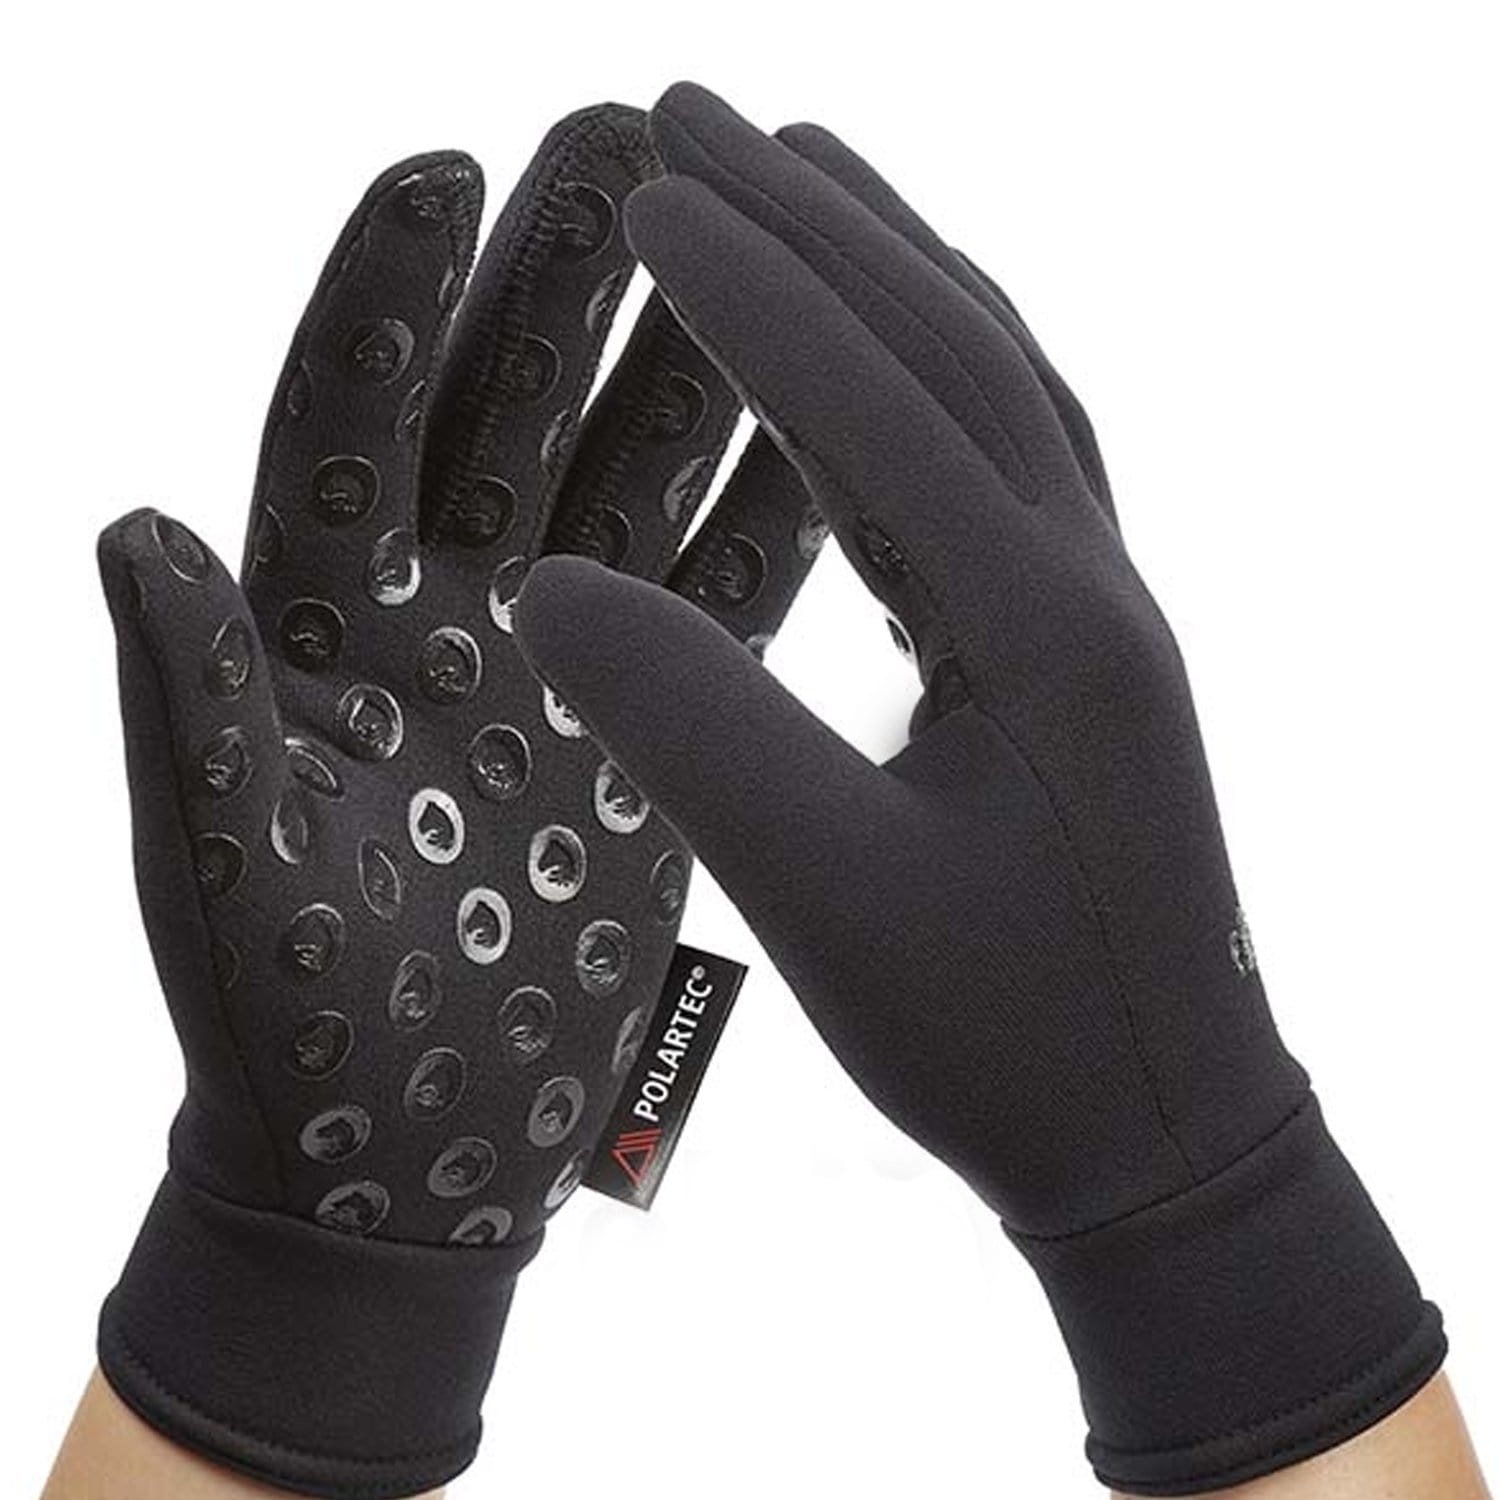 Elico Polartec Gloves Black Studio GLPOL165